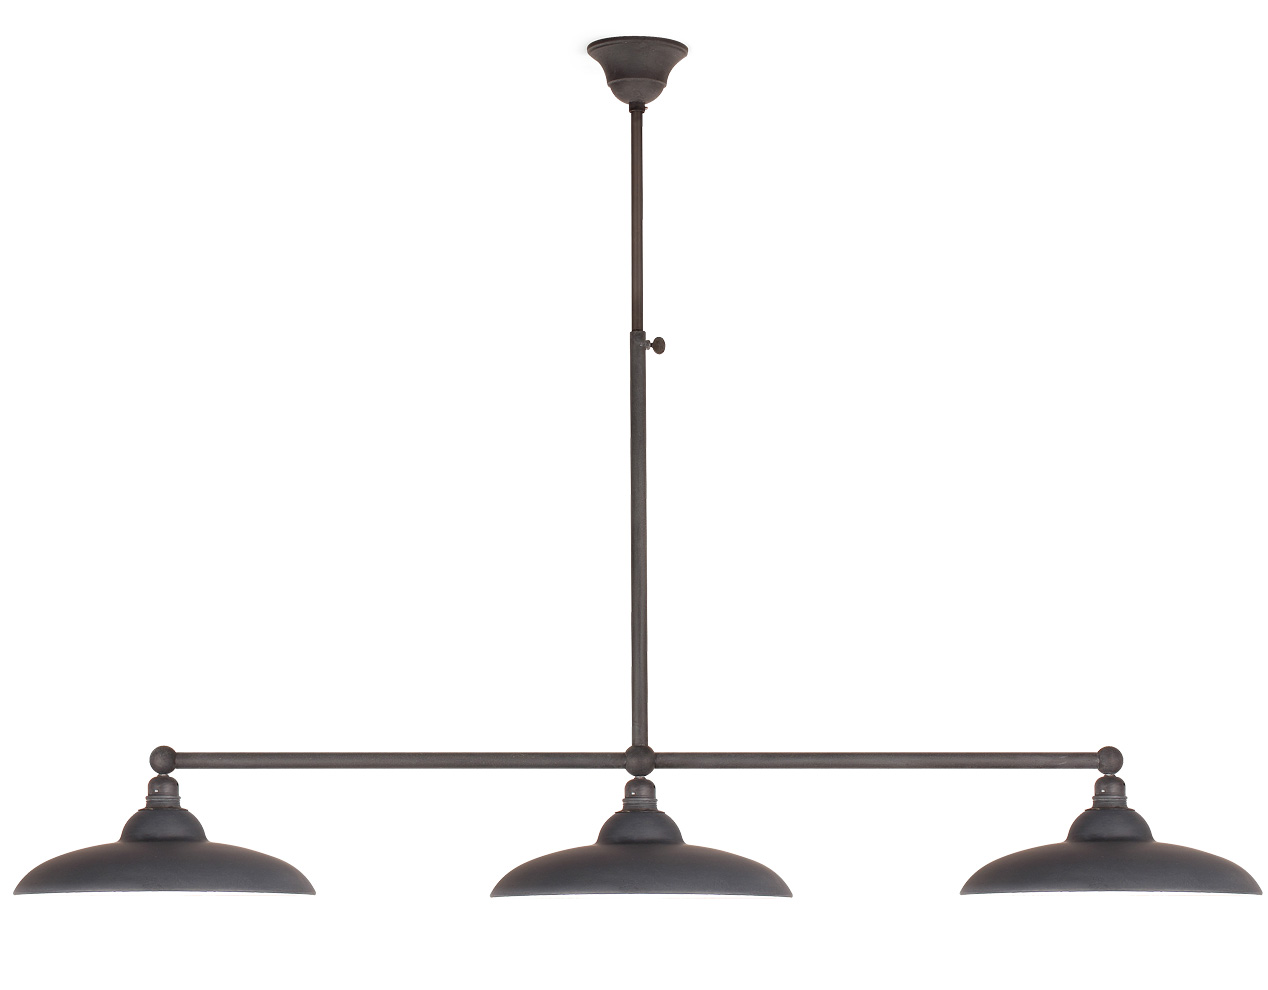 Rustikale Stabpendel-Balkenlampe mit drei flachen Schirmen: Balken-Hängeleuchte mit drei Schirmen zur Tischbeleuchtung (hier bleigrau)